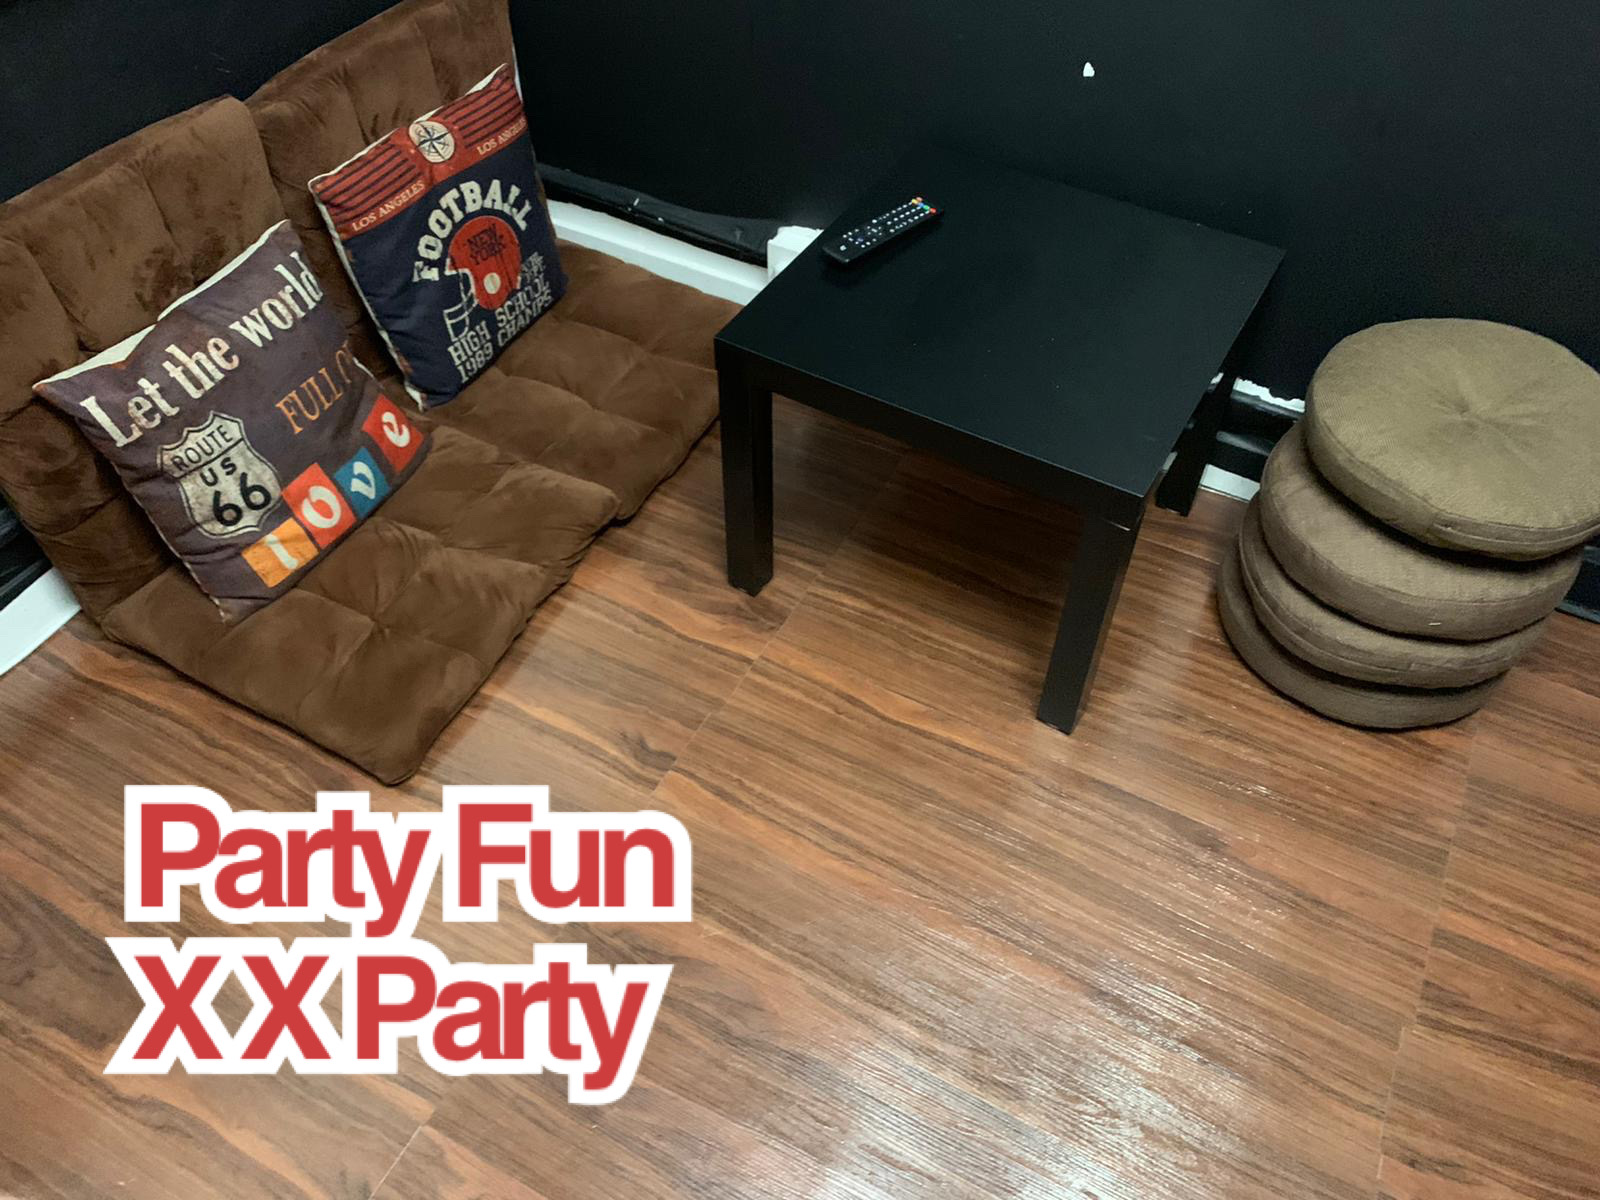 Party Fun XX Party